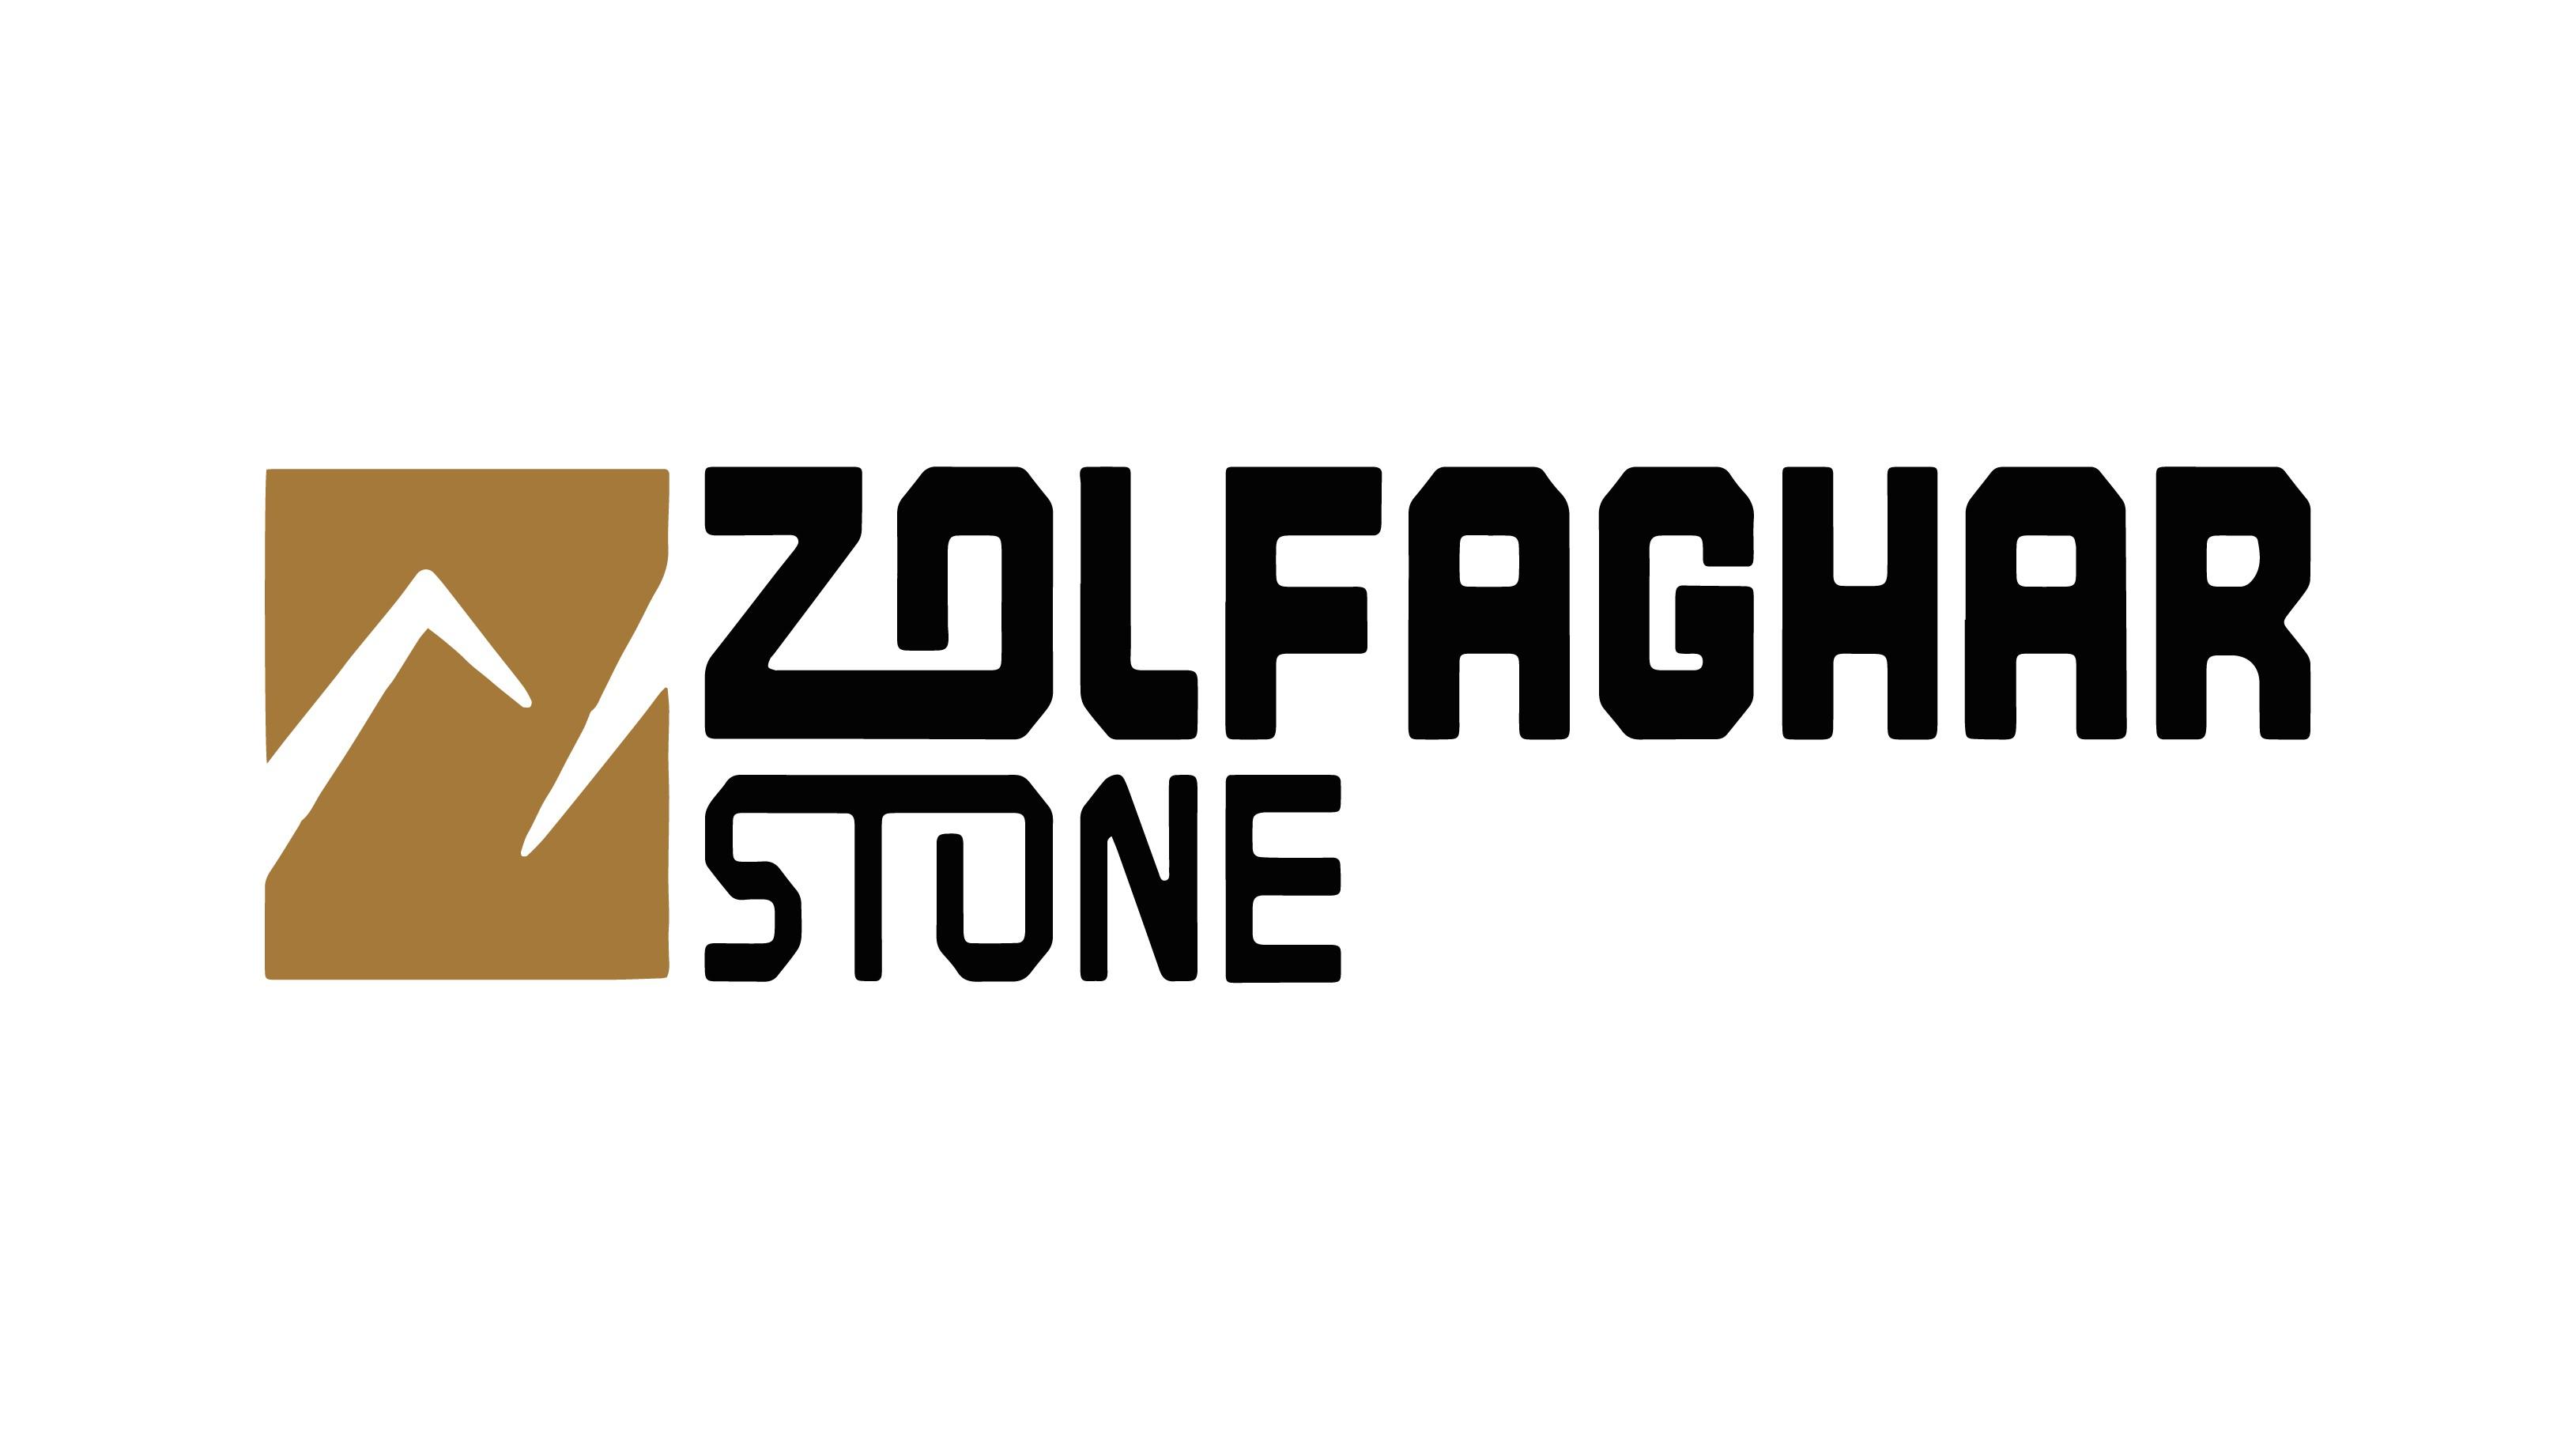 Zolfaghar Stone Factory